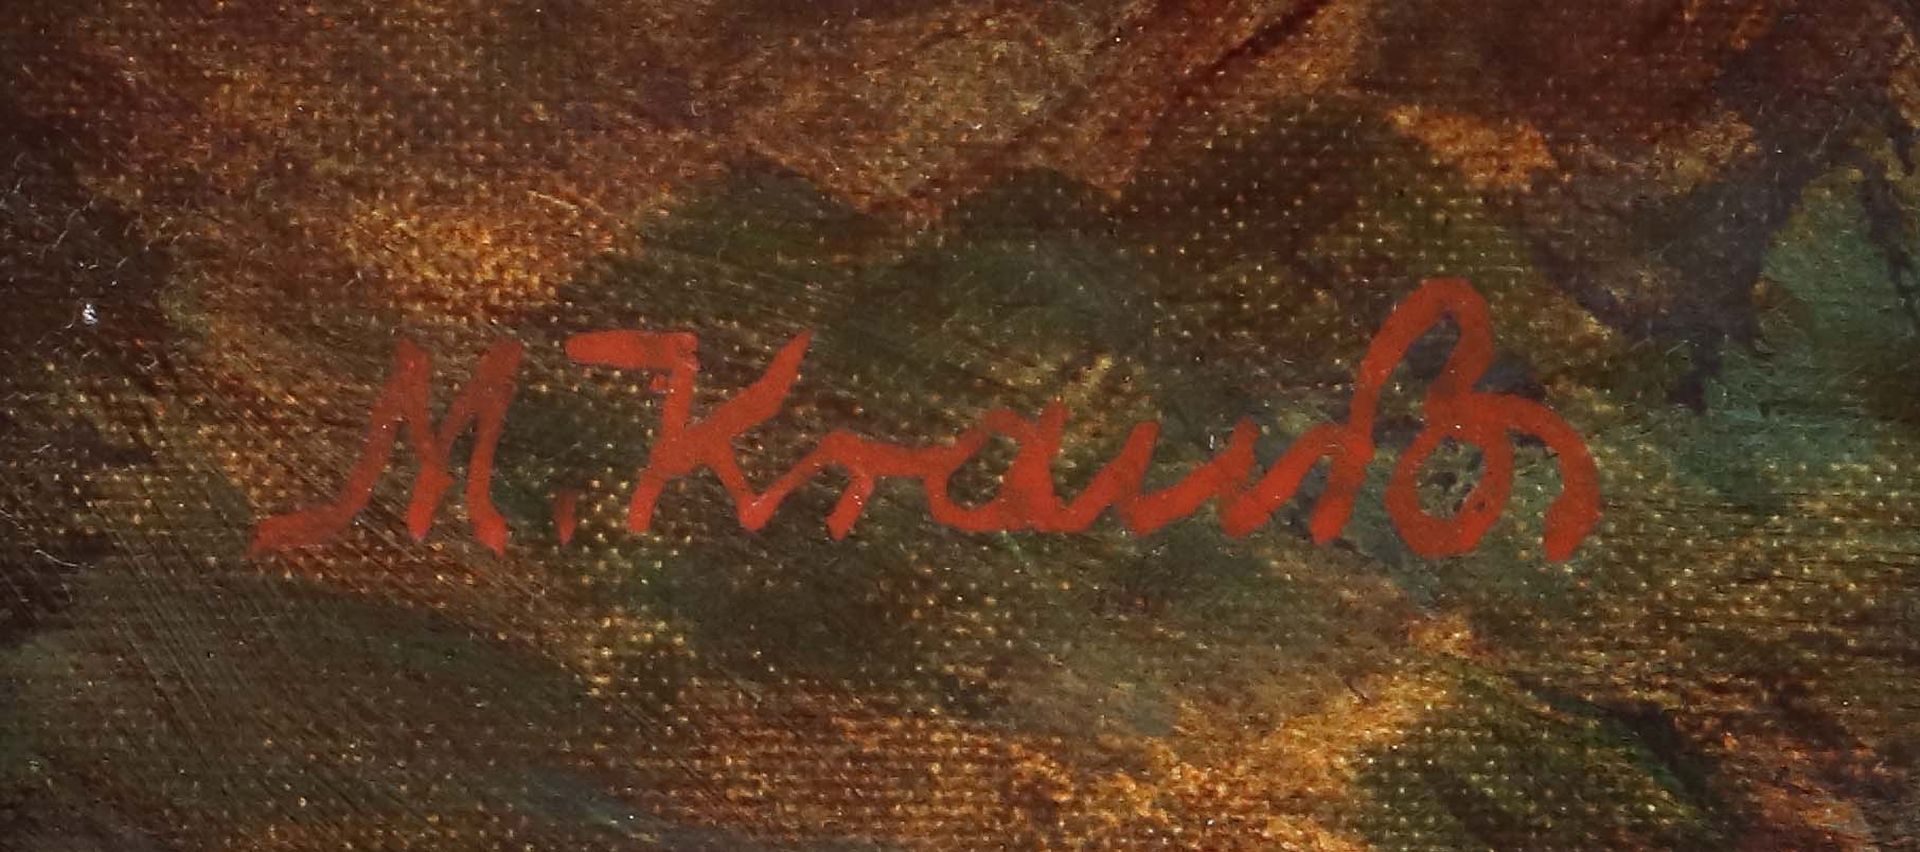 Krauss, Max Karlsbad 1902 - ?, Maler - Bild 3 aus 4